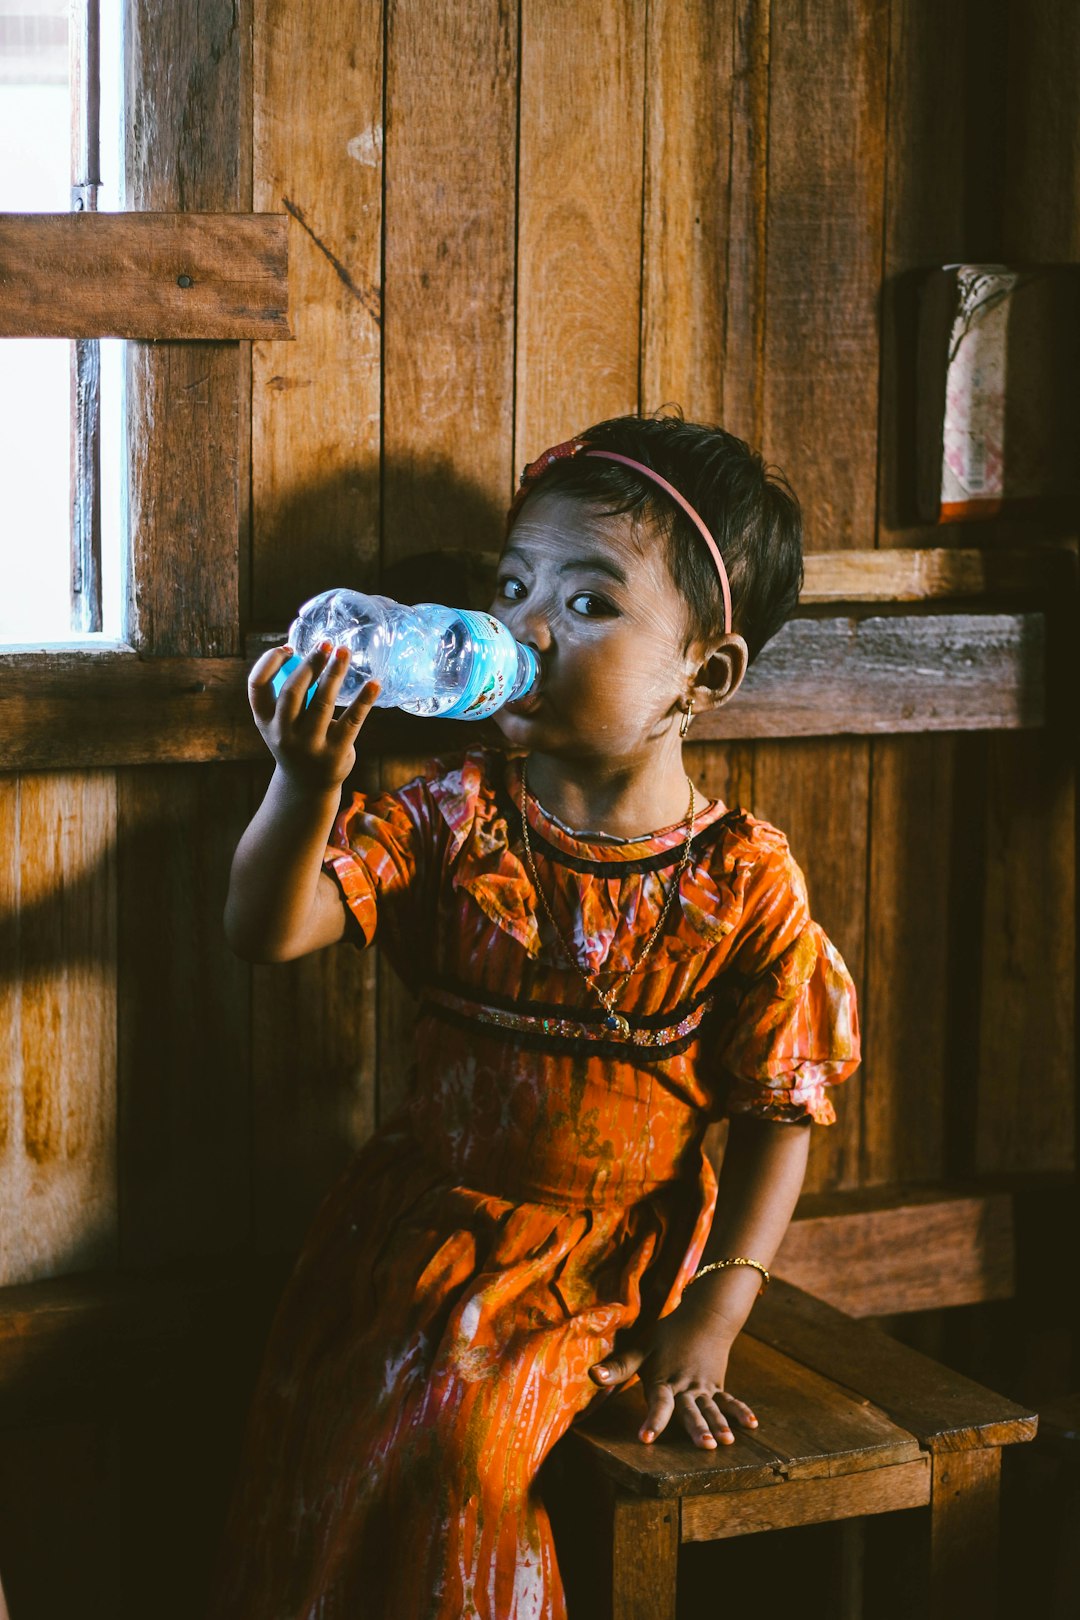 child drinking water